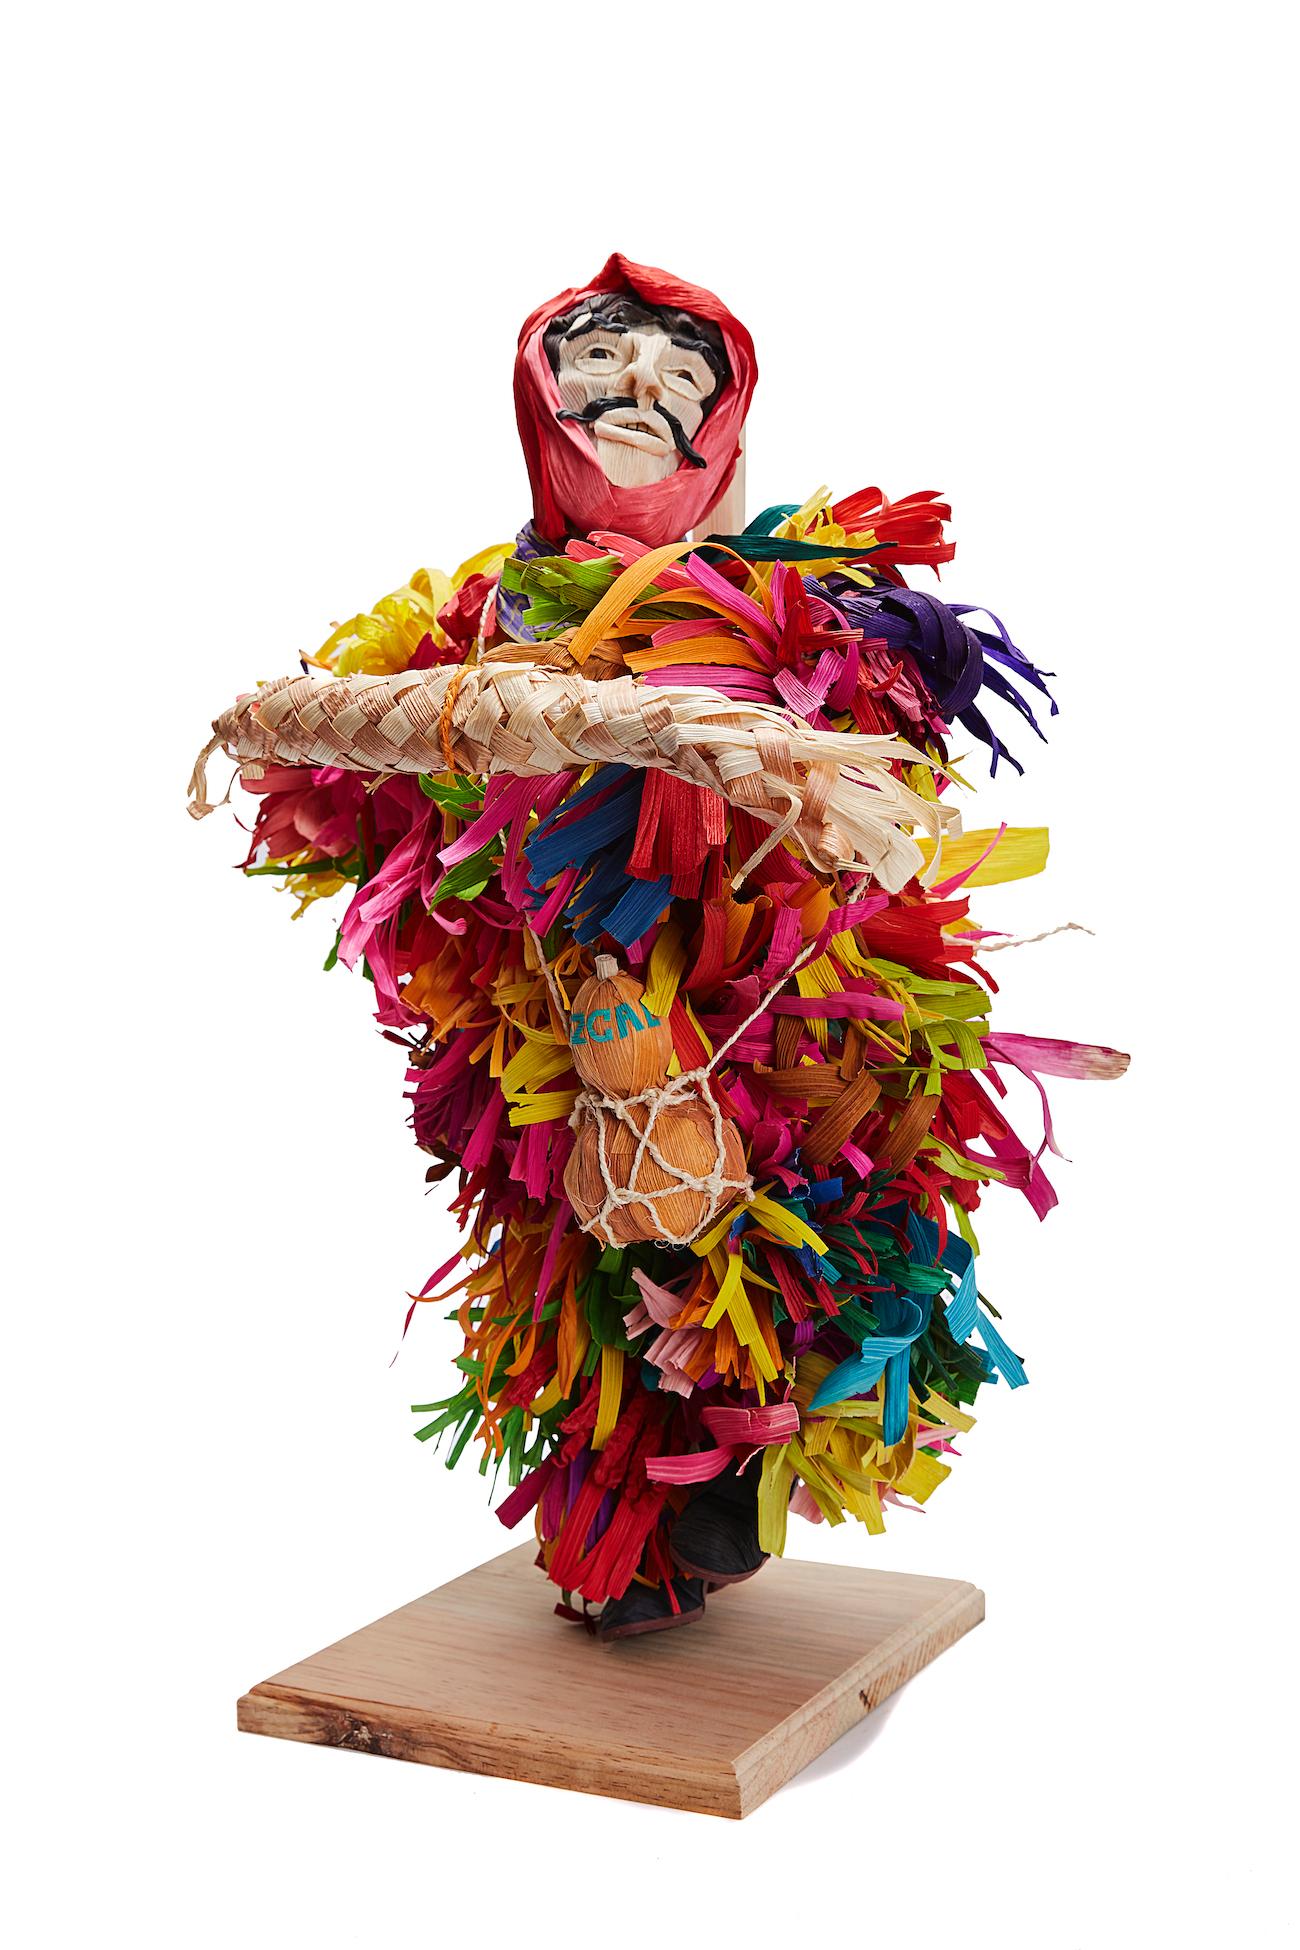 Mago de Putla - Wizard of Putla - Mexican Folk Art  Cactus Fine Art - Sculpture by Marco y Moises Ruiz Sosa